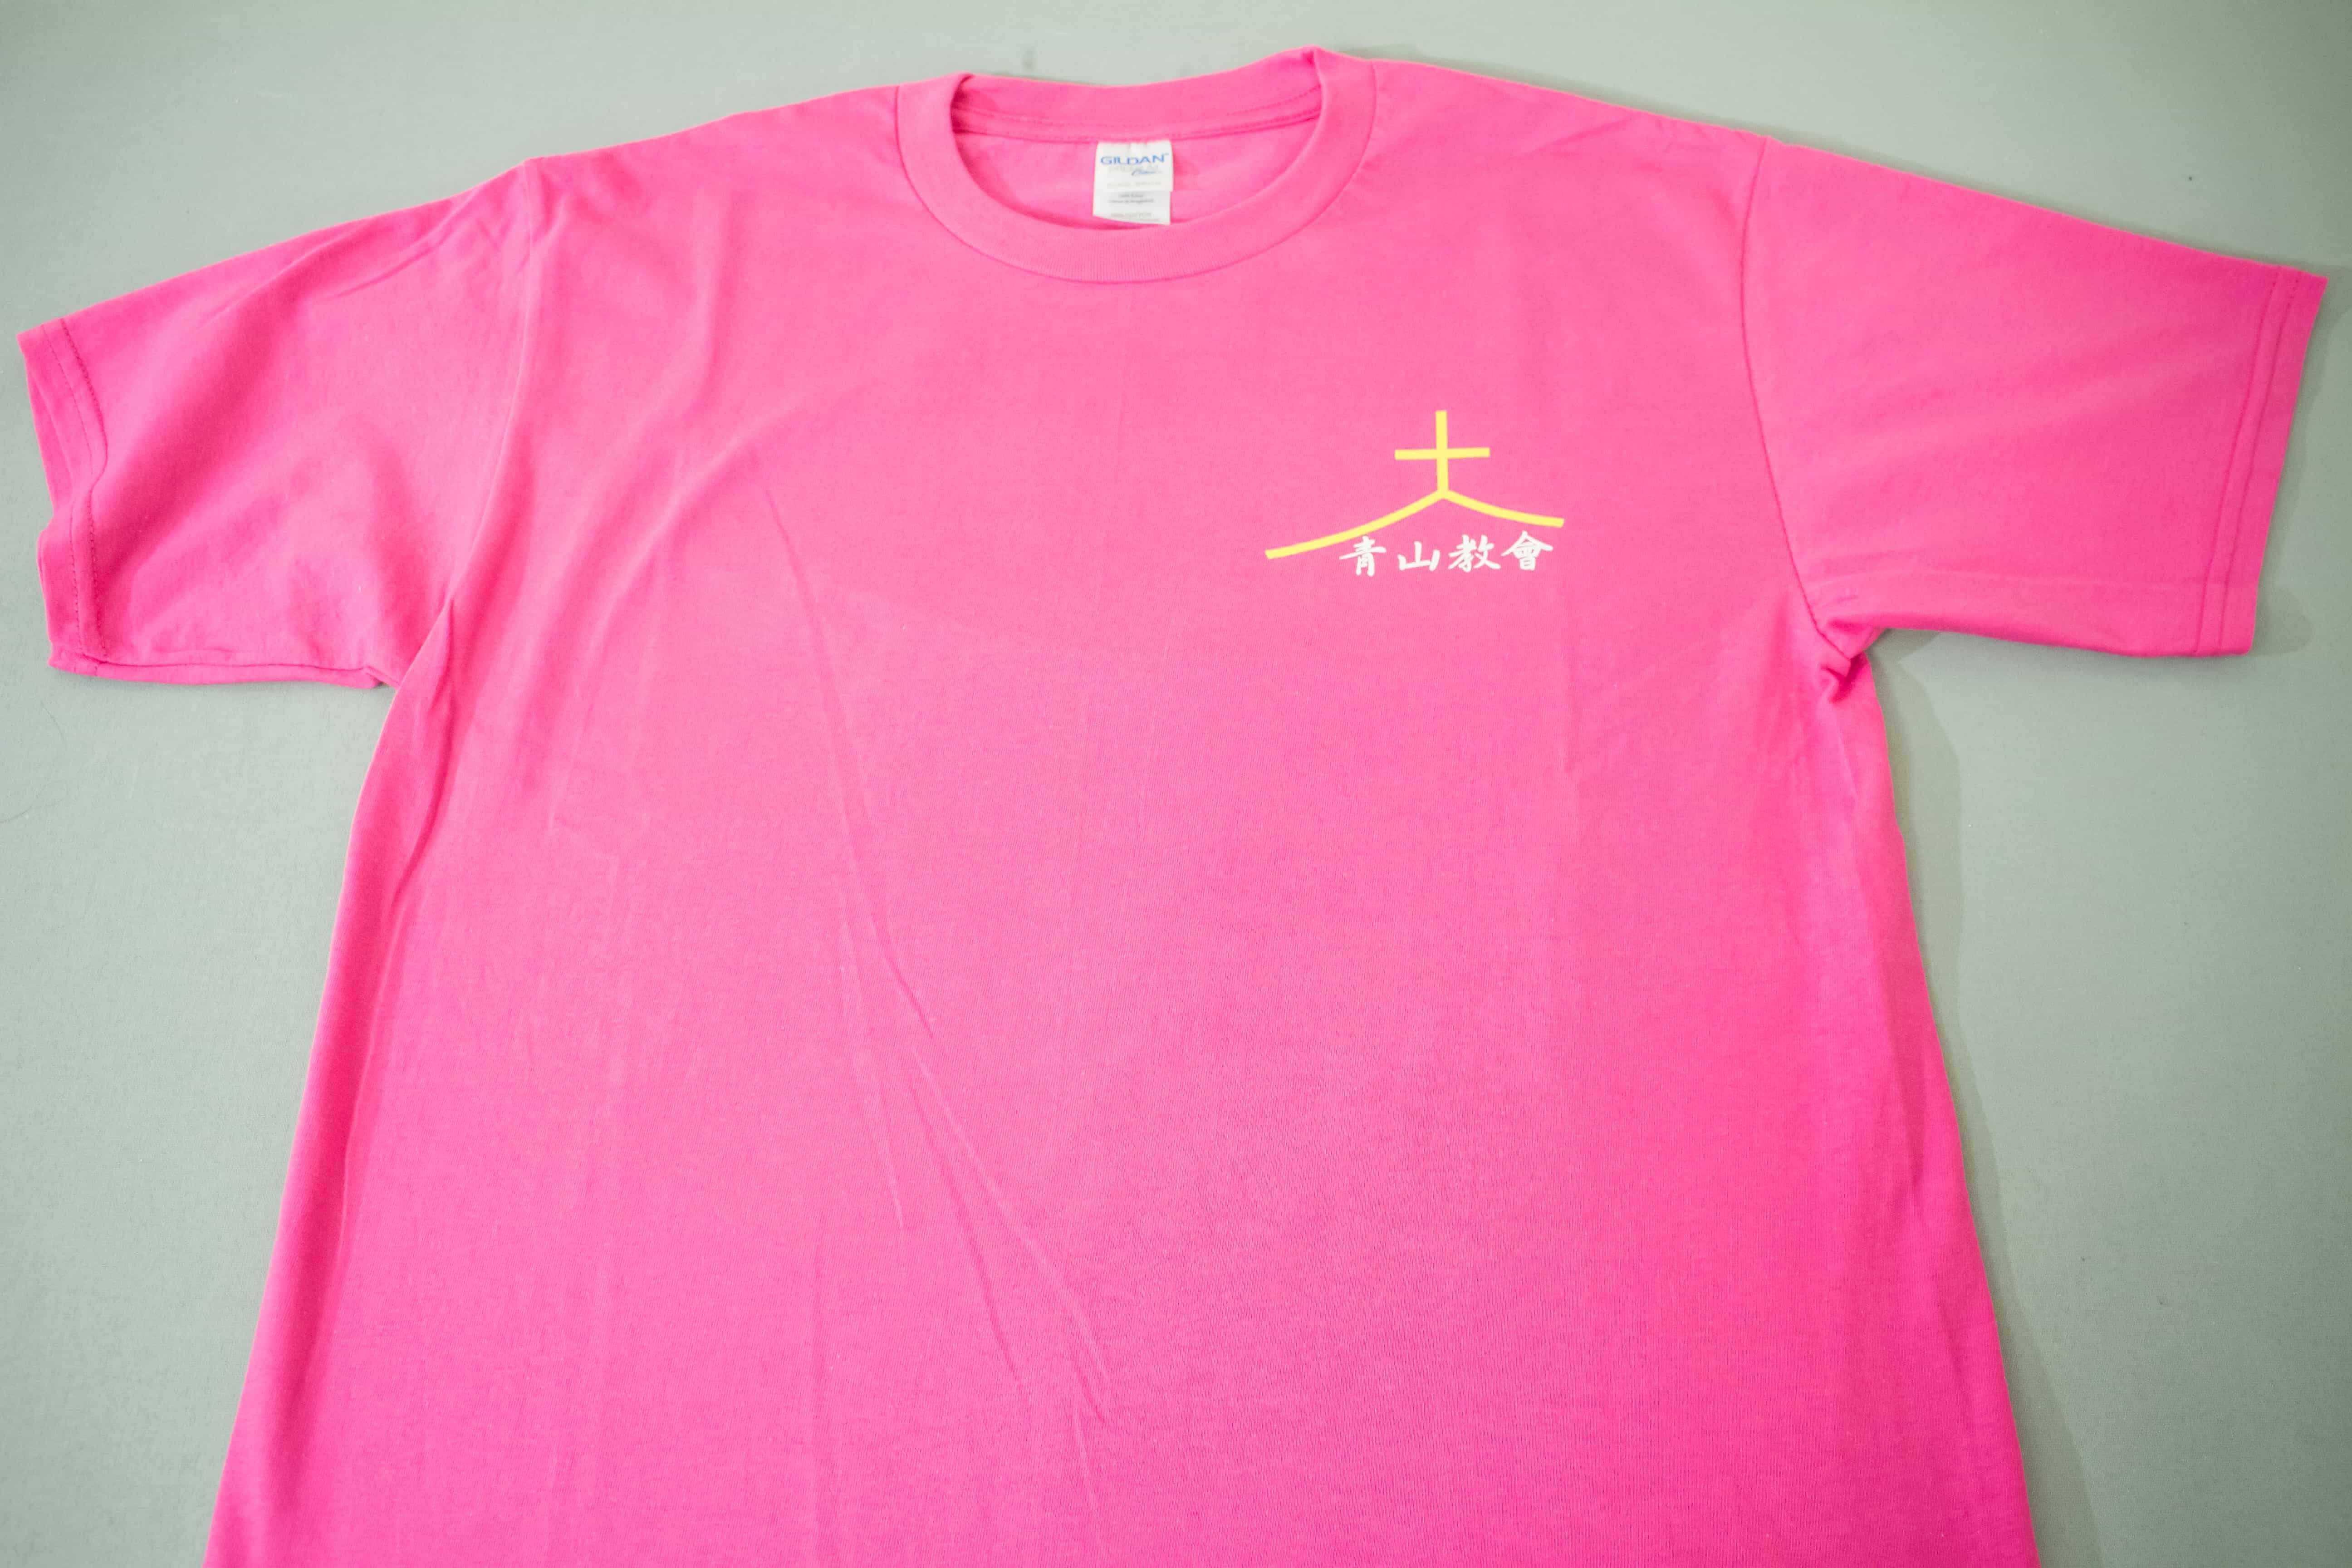 客製化T恤- 青山教會 團體T恤的第1張圖(客製化公司制服、班服製作、團體服製作等示意或作品圖)